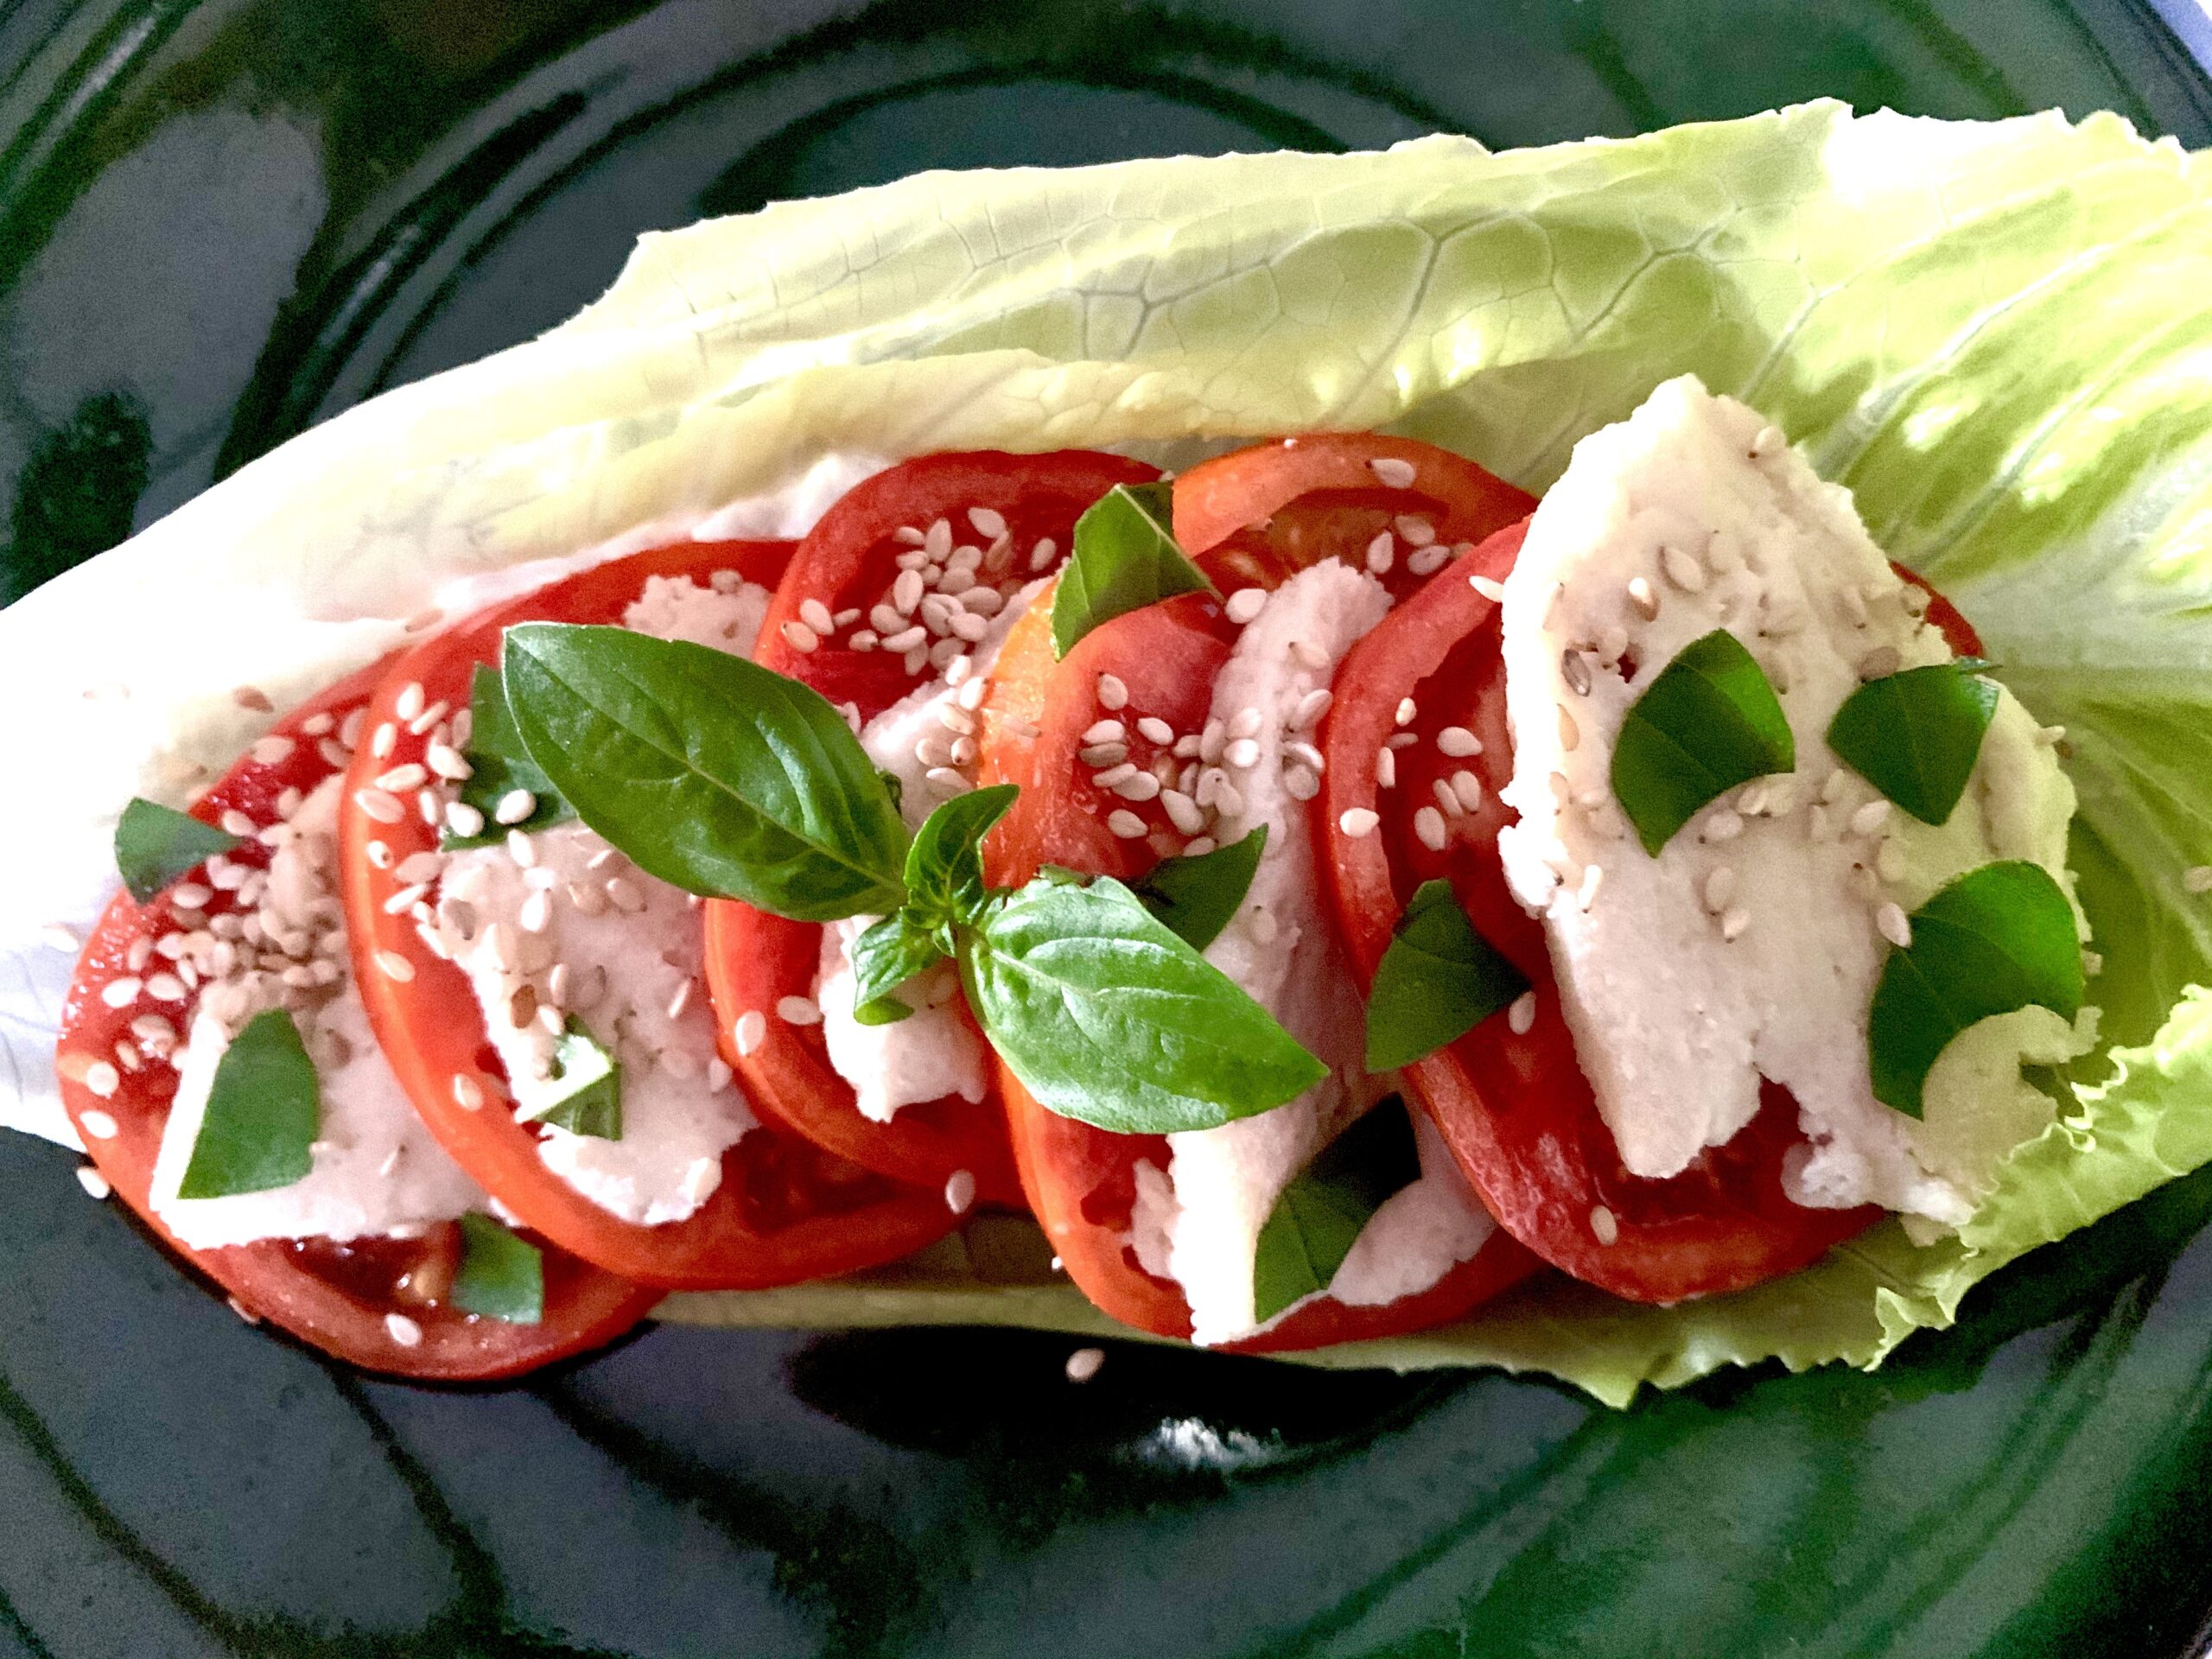 Vegan mozzarella and tomato salad in a lettuce leaf